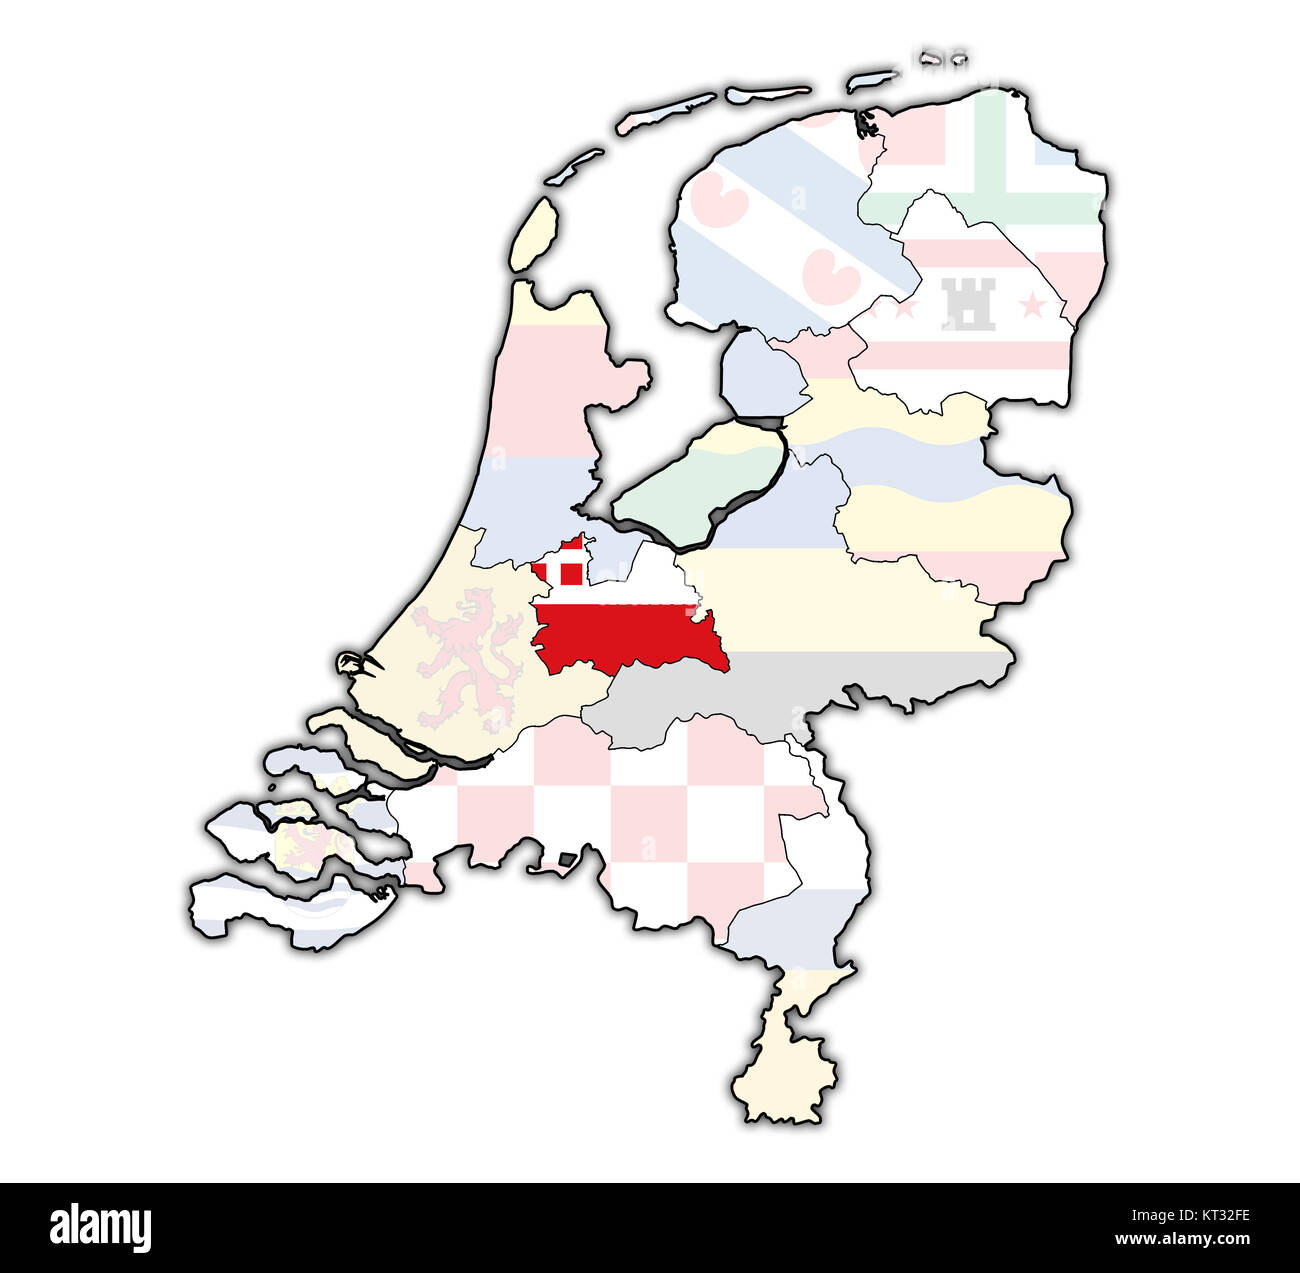 Utrecht auf der Karte von Provinzen der Niederlande Stockfoto